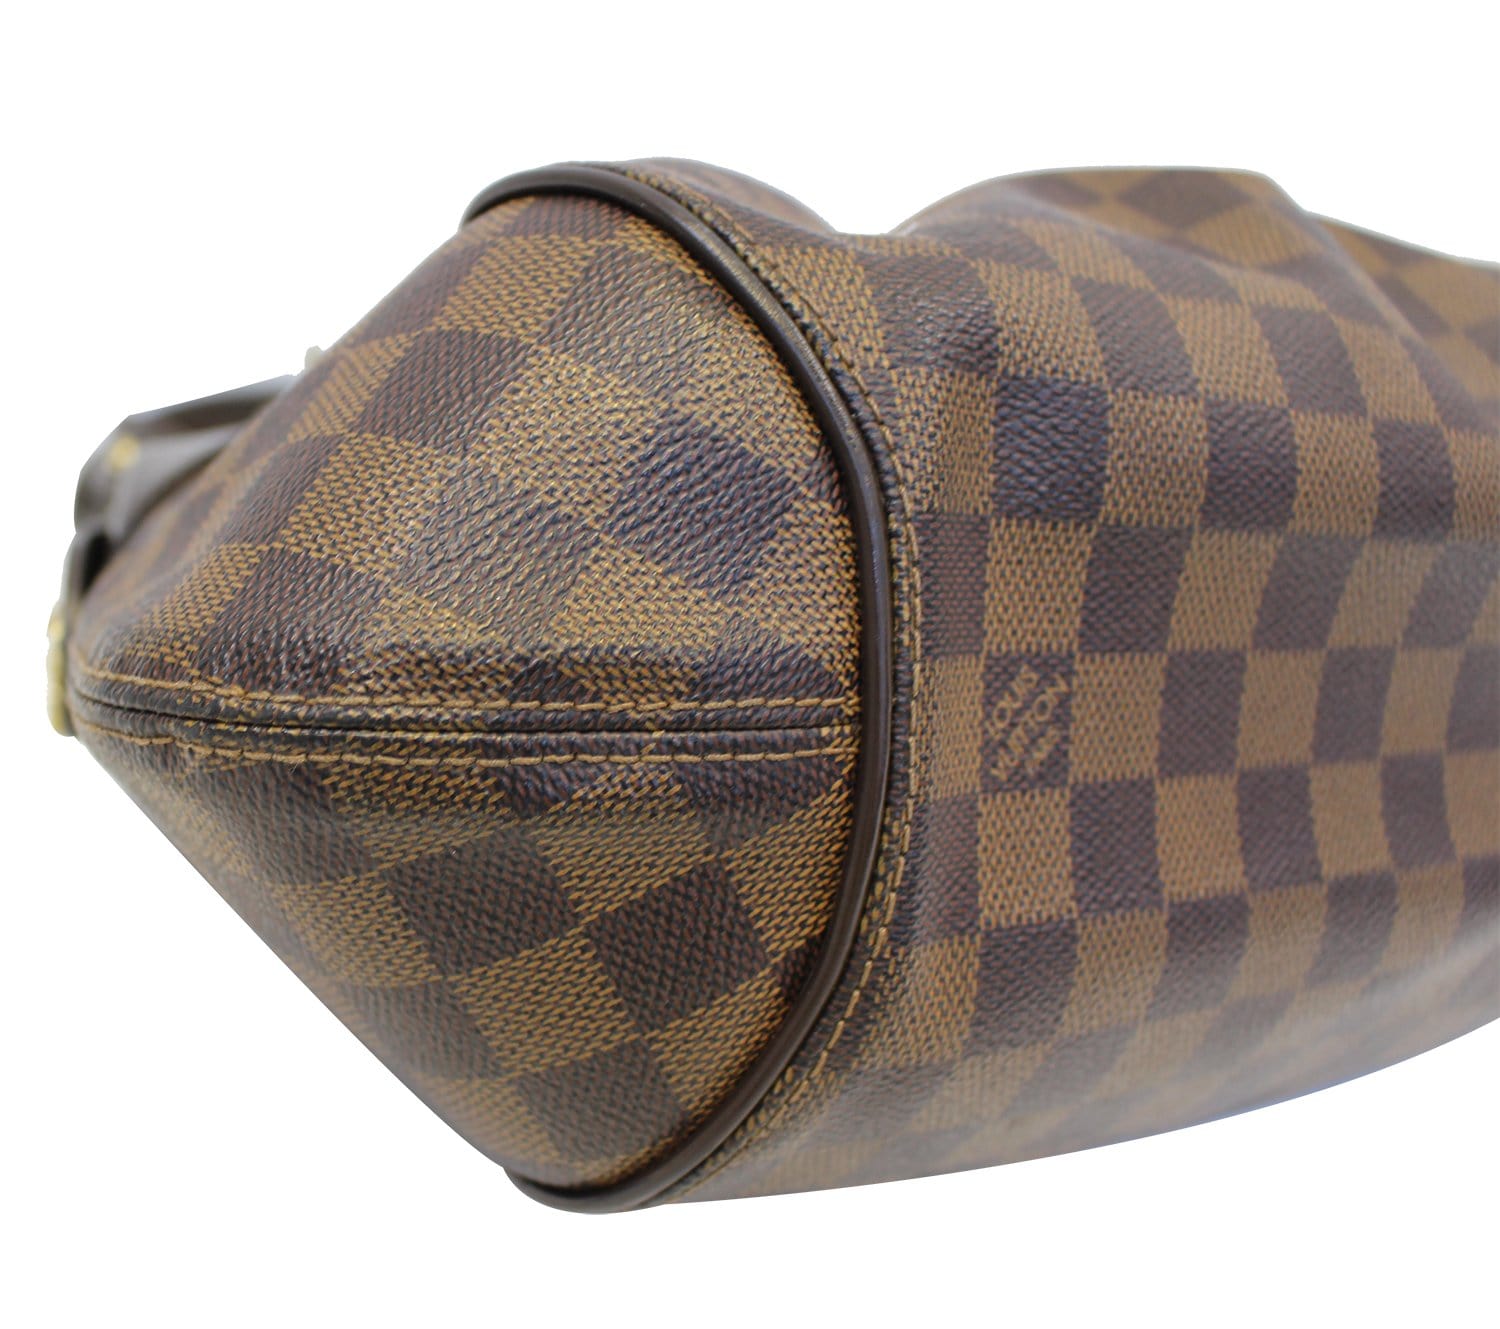 Louis Vuitton Damier Ebene Sistina PM Shoulder Bag 75lk328s For